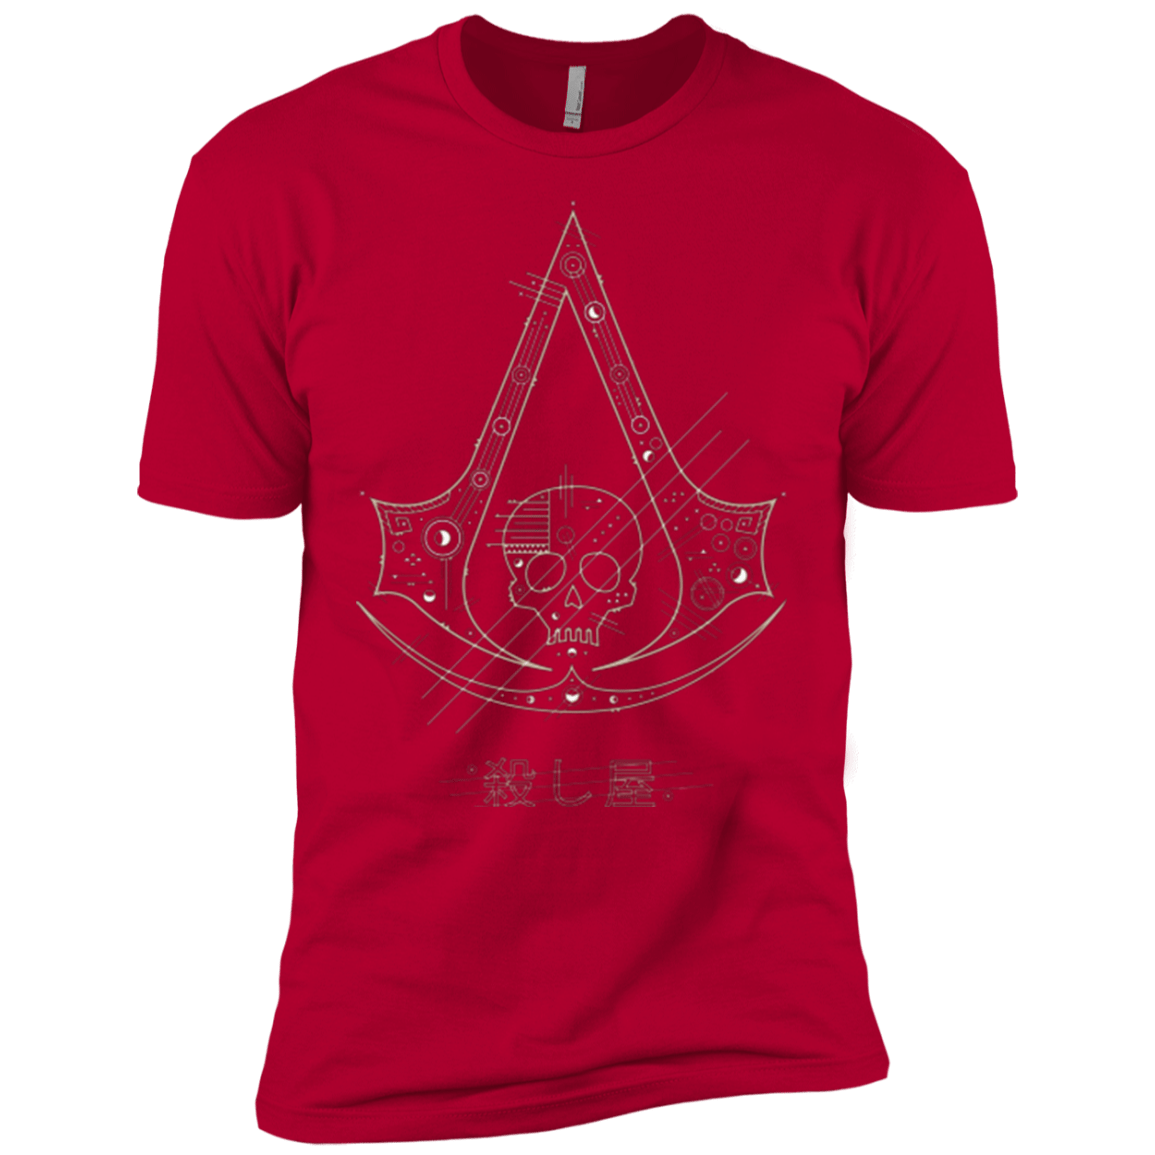 T-Shirts Red / YXS Tech Creed Boys Premium T-Shirt